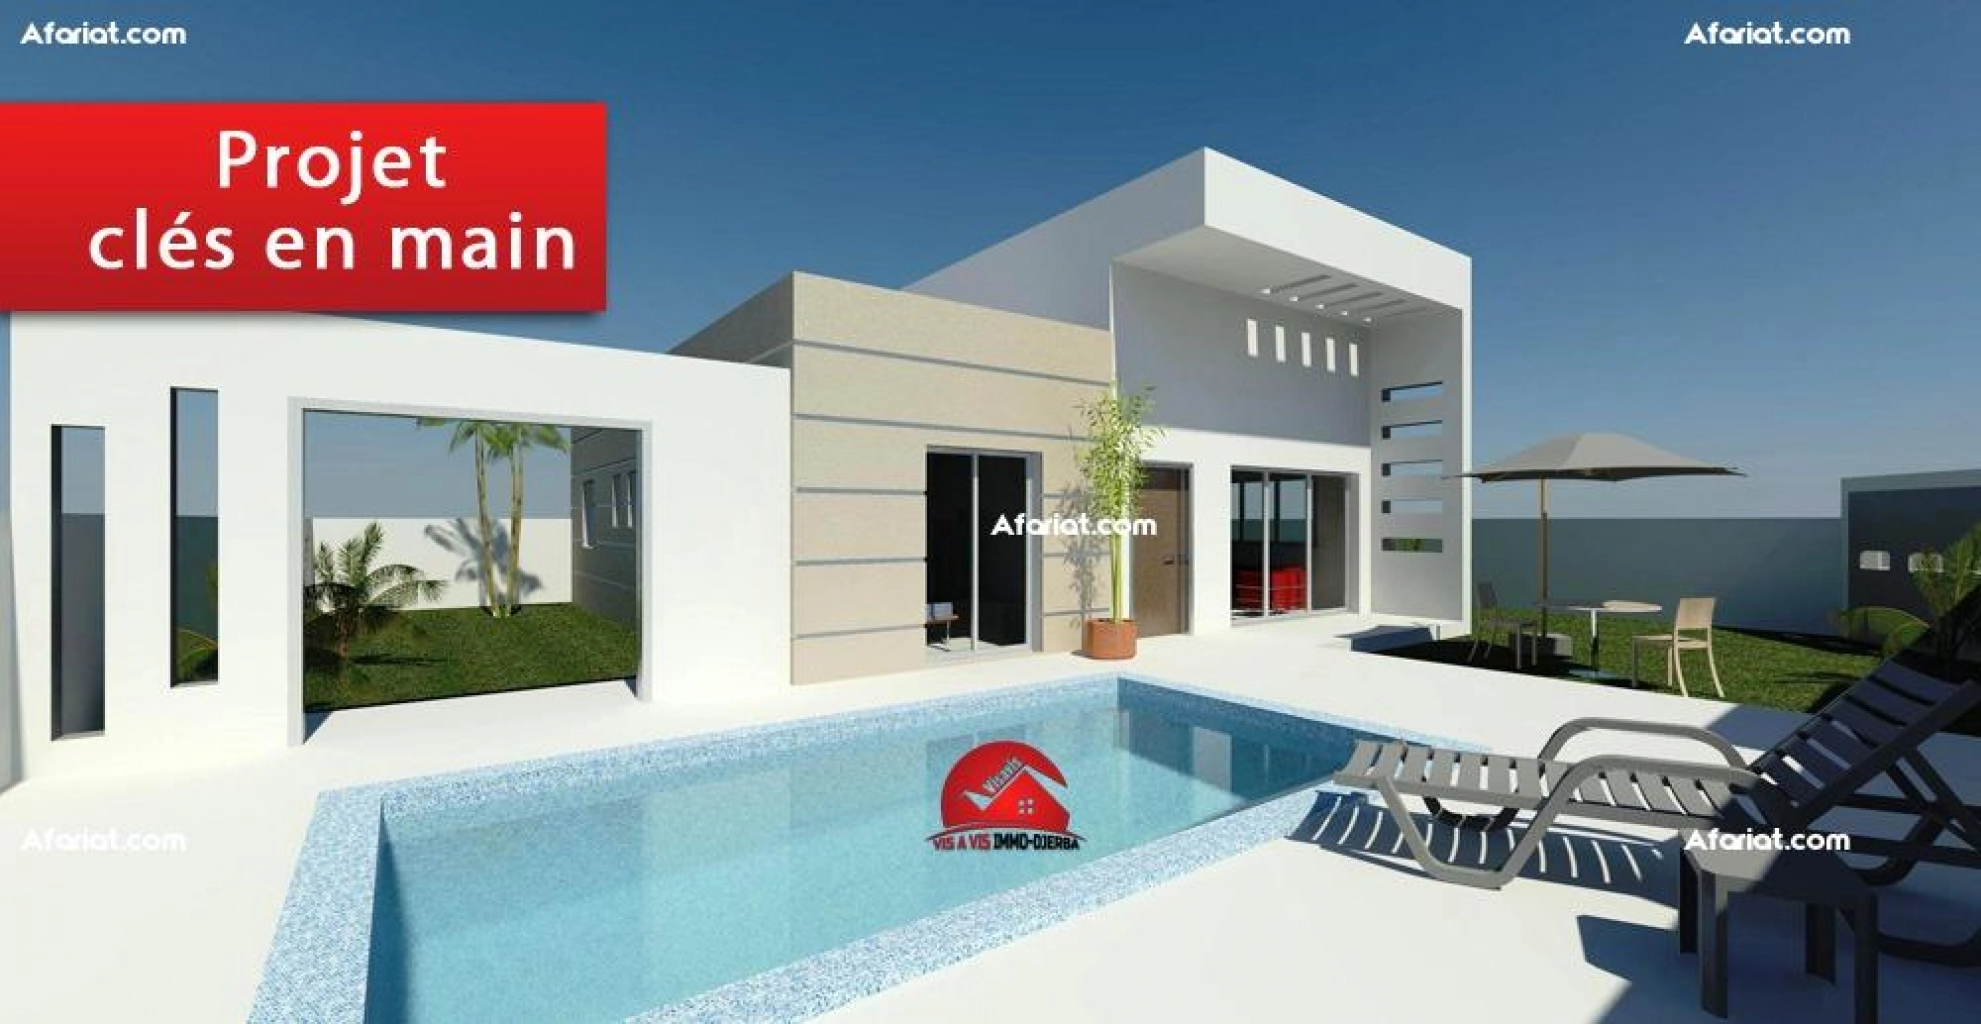 A vendre un projet moderne d une villa a houmt souk djerba